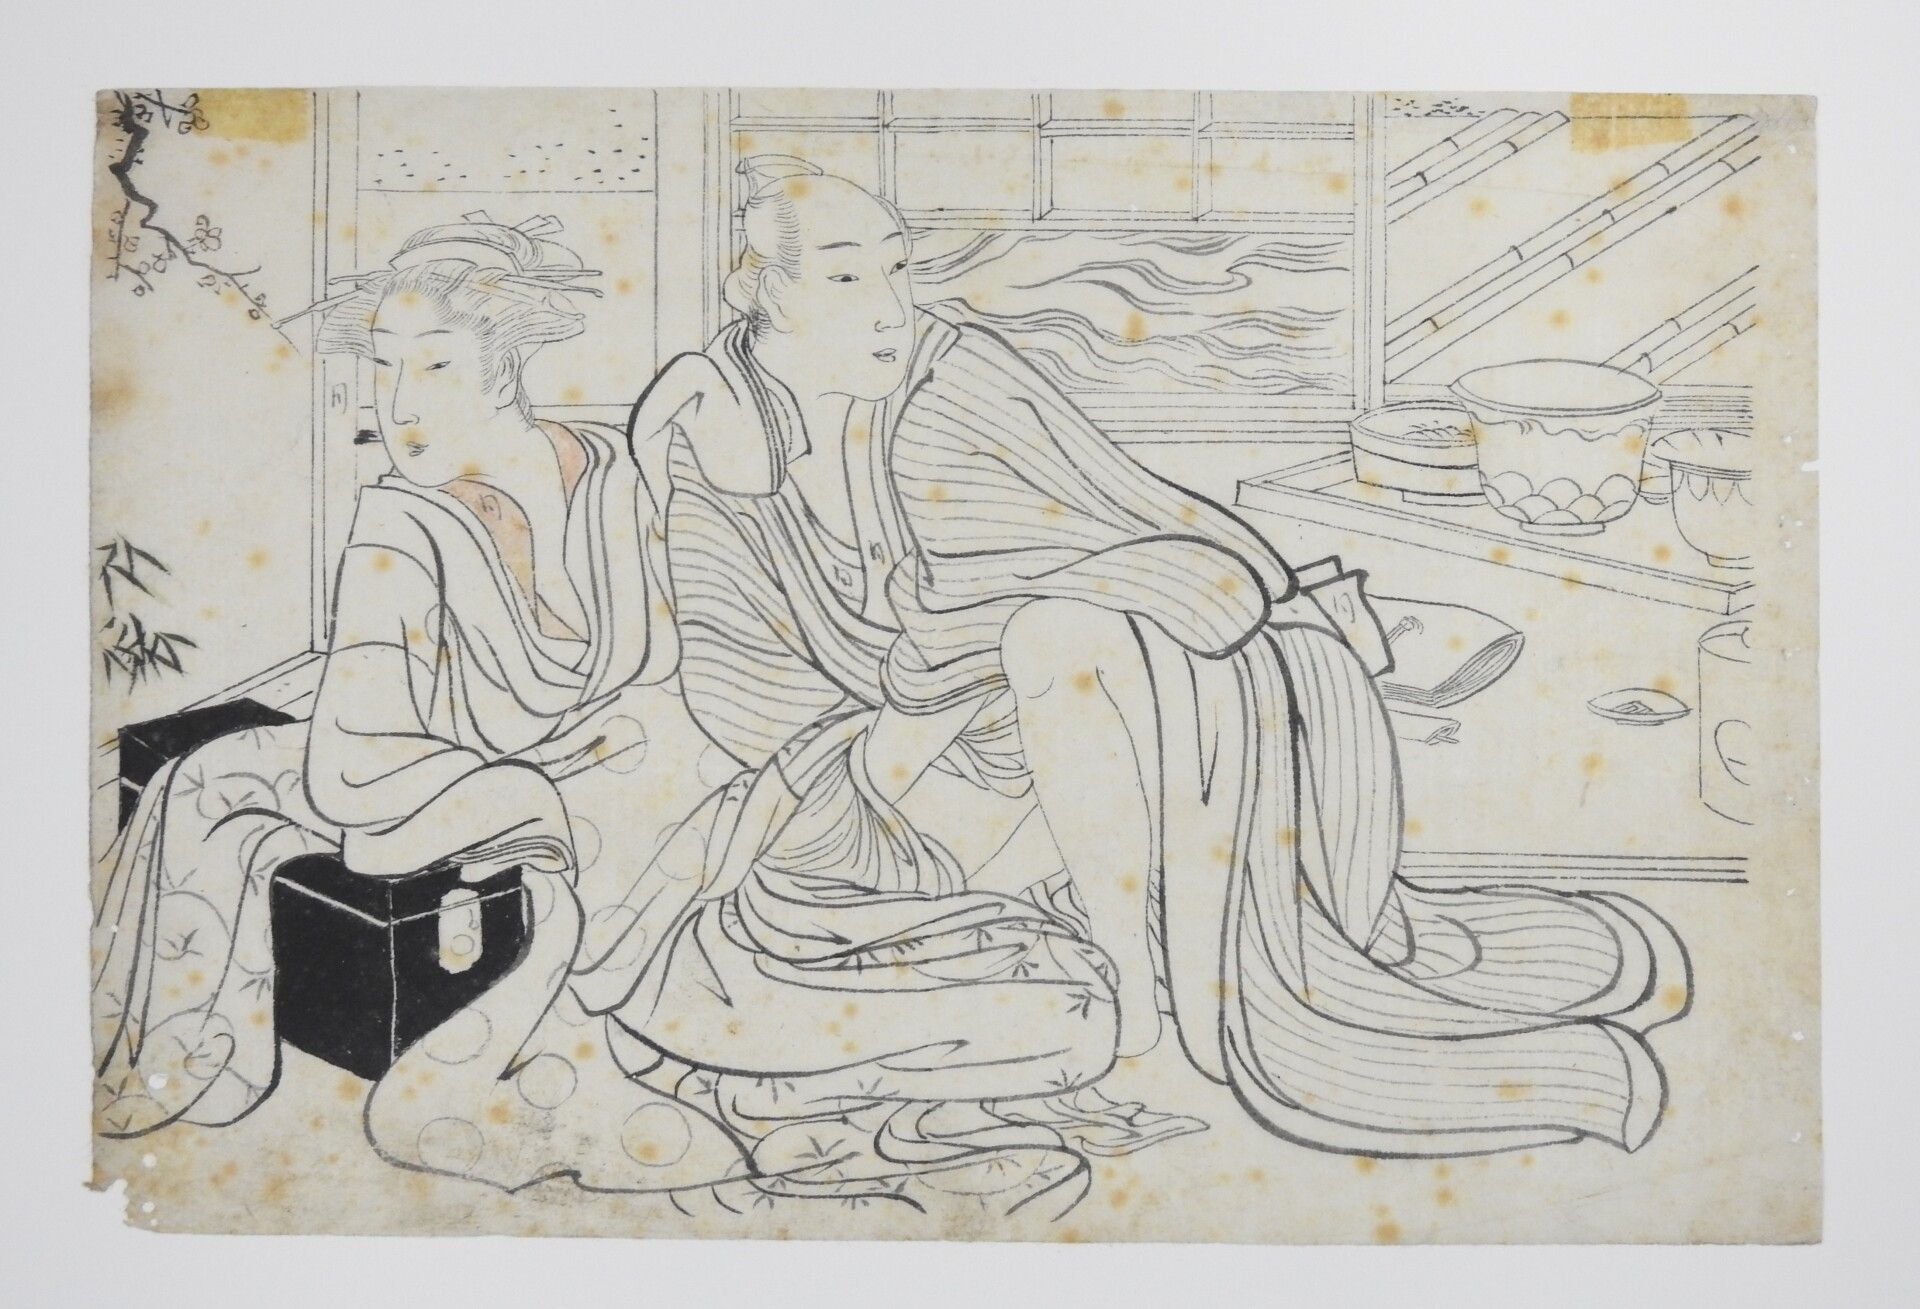 Null 胜川俊秀（1726-1792）：爱情场景。画笔画。18世纪。18 x 27,5厘米。 (雀斑和针孔）。)

胜川顺昌1726-1792年是日本江户时代&hellip;